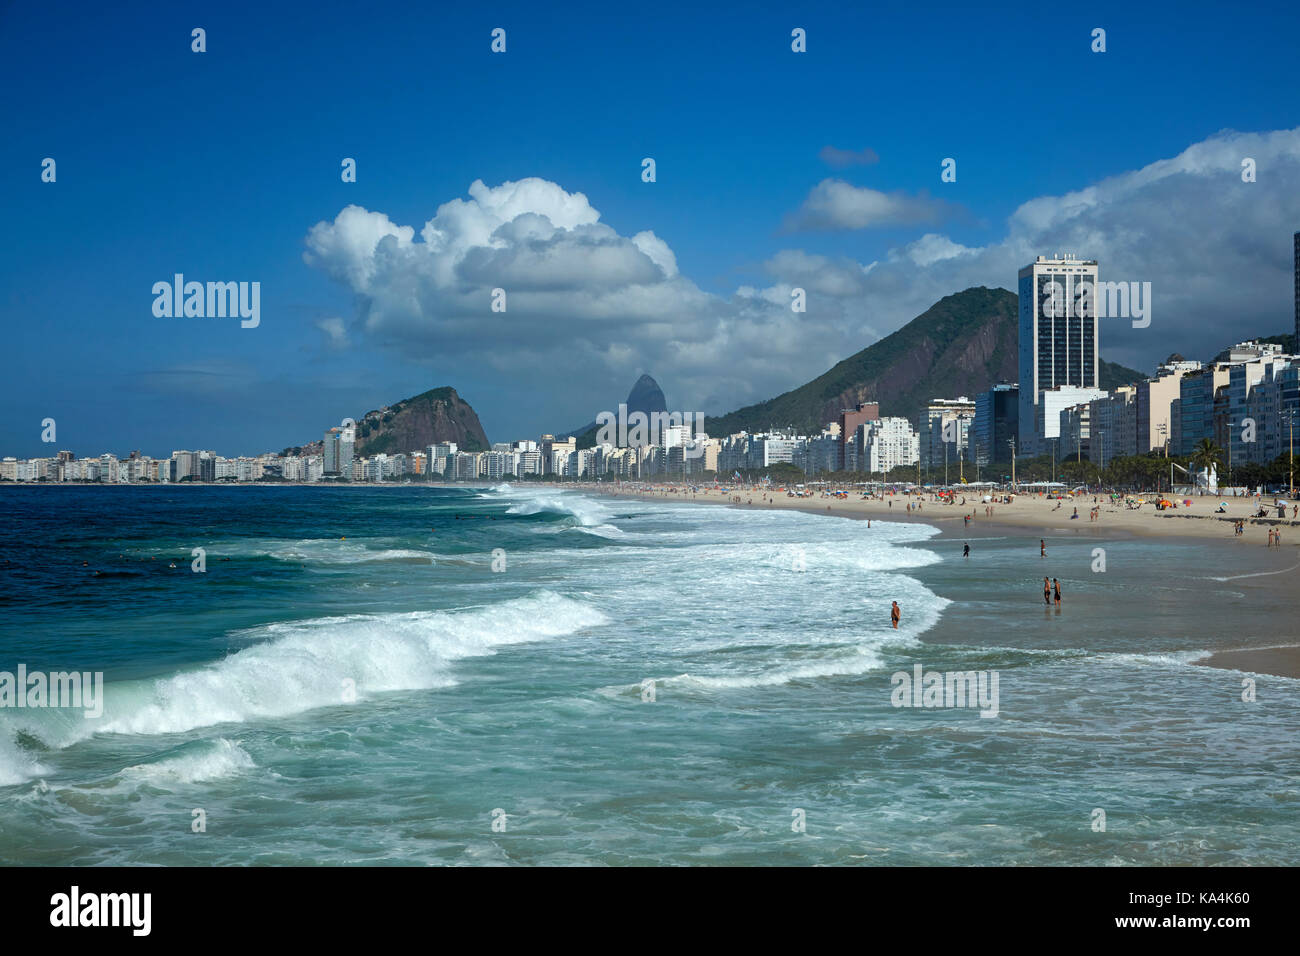 La plage de Leme, Copacabana, Rio de Janeiro, Brésil, Amérique du Sud Banque D'Images